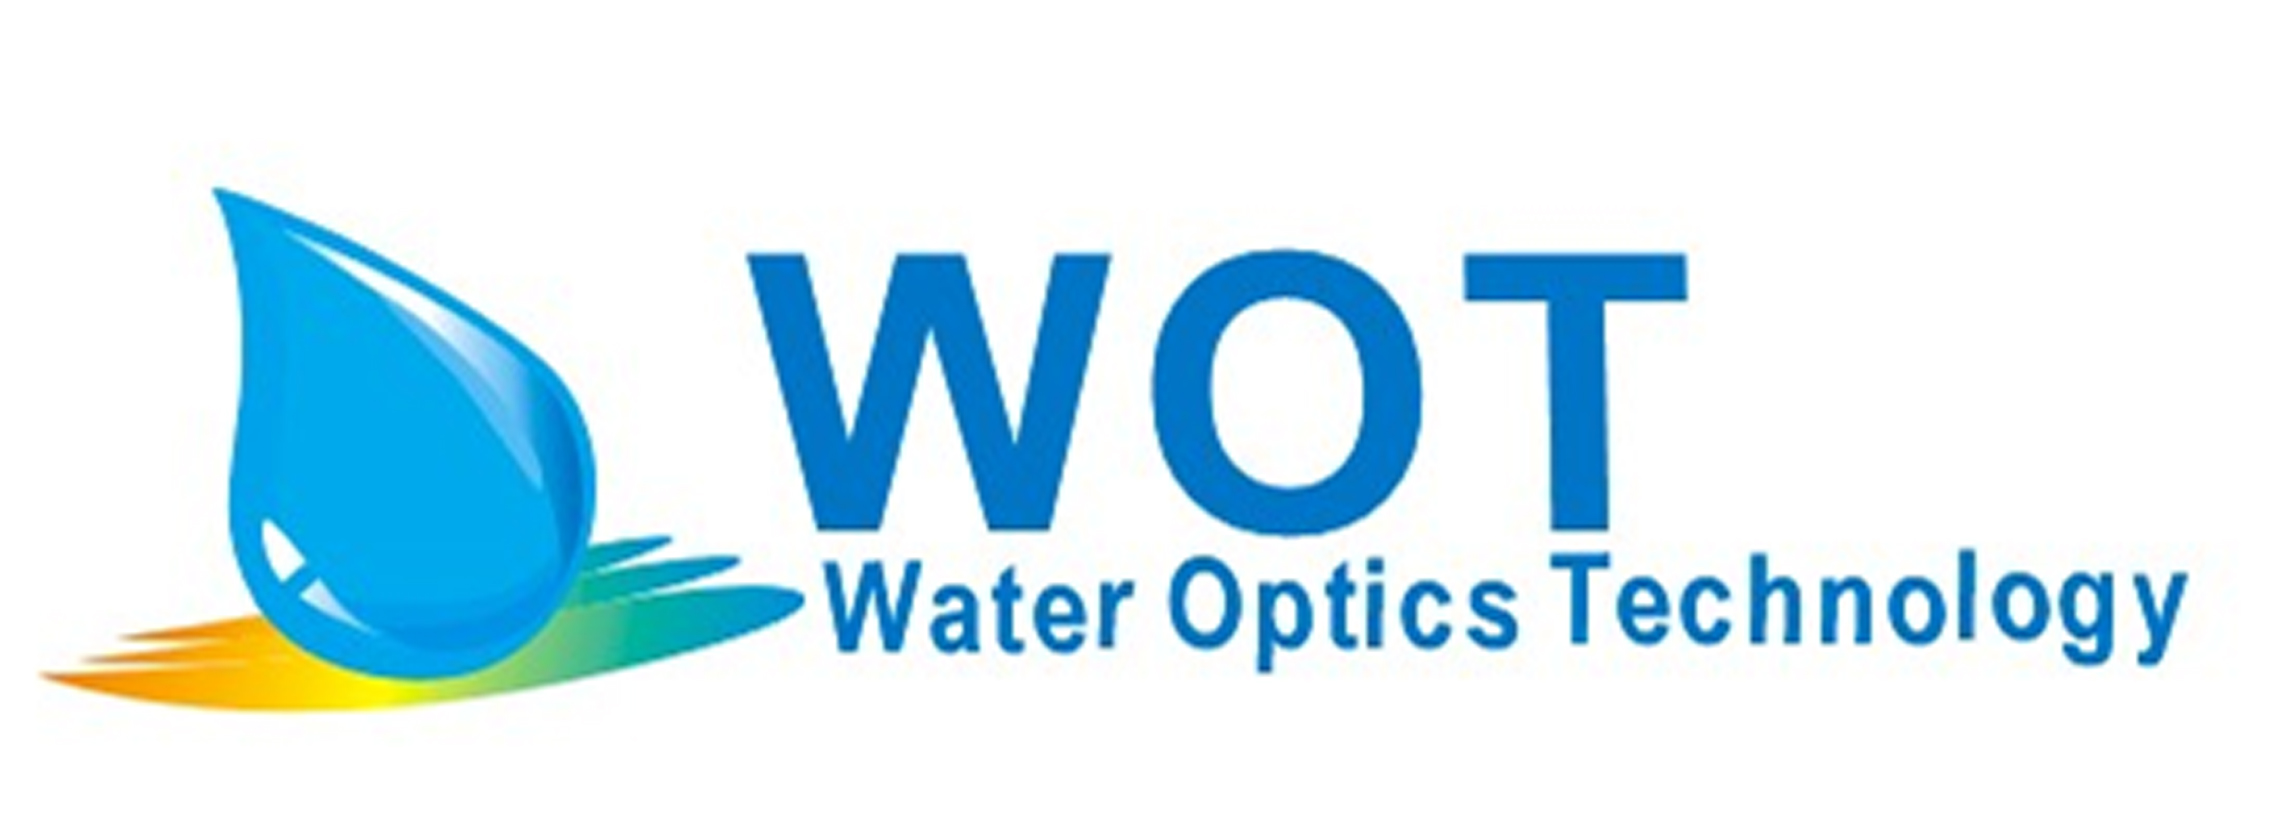 Water Optics Technology